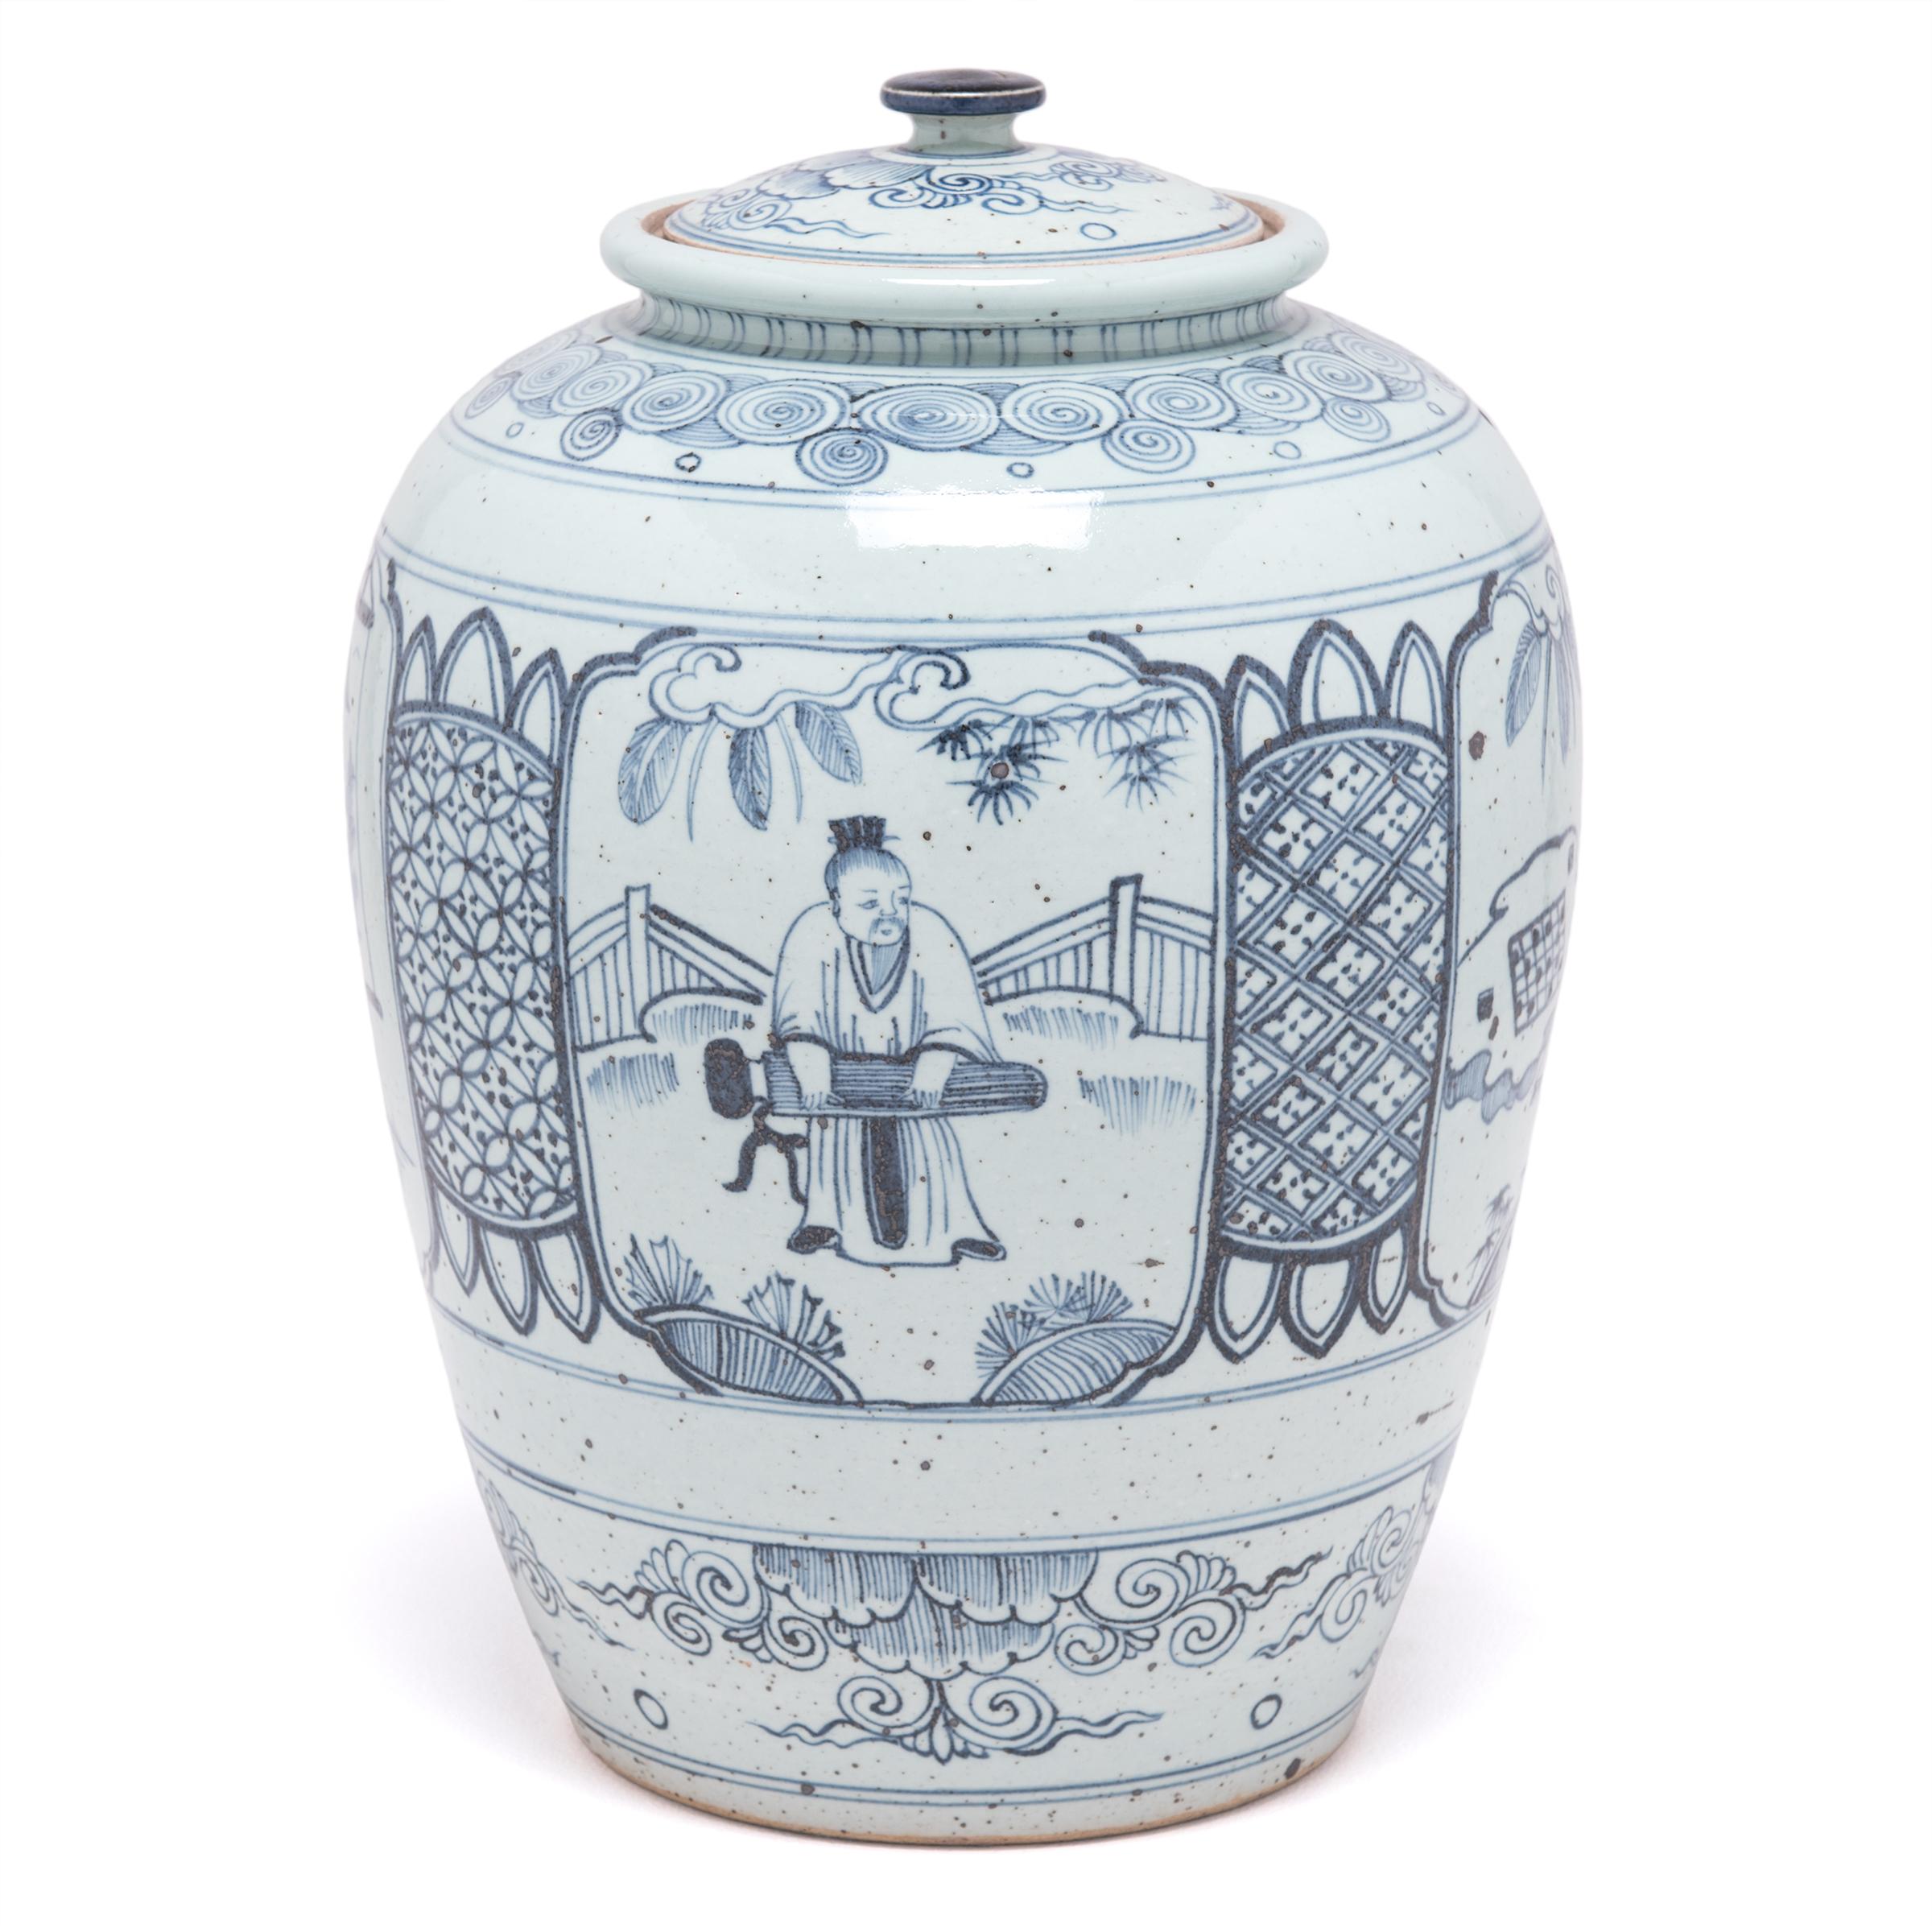 In der altehrwürdigen Tradition der chinesischen Blau-Weiß-Keramik stellt dieses Ingwergefäß mit Deckel einen Mann aus der Qing-Dynastie dar, der sich mit den vier Künsten beschäftigt, die er beherrschen muss, um ein berühmter Gelehrter zu werden.